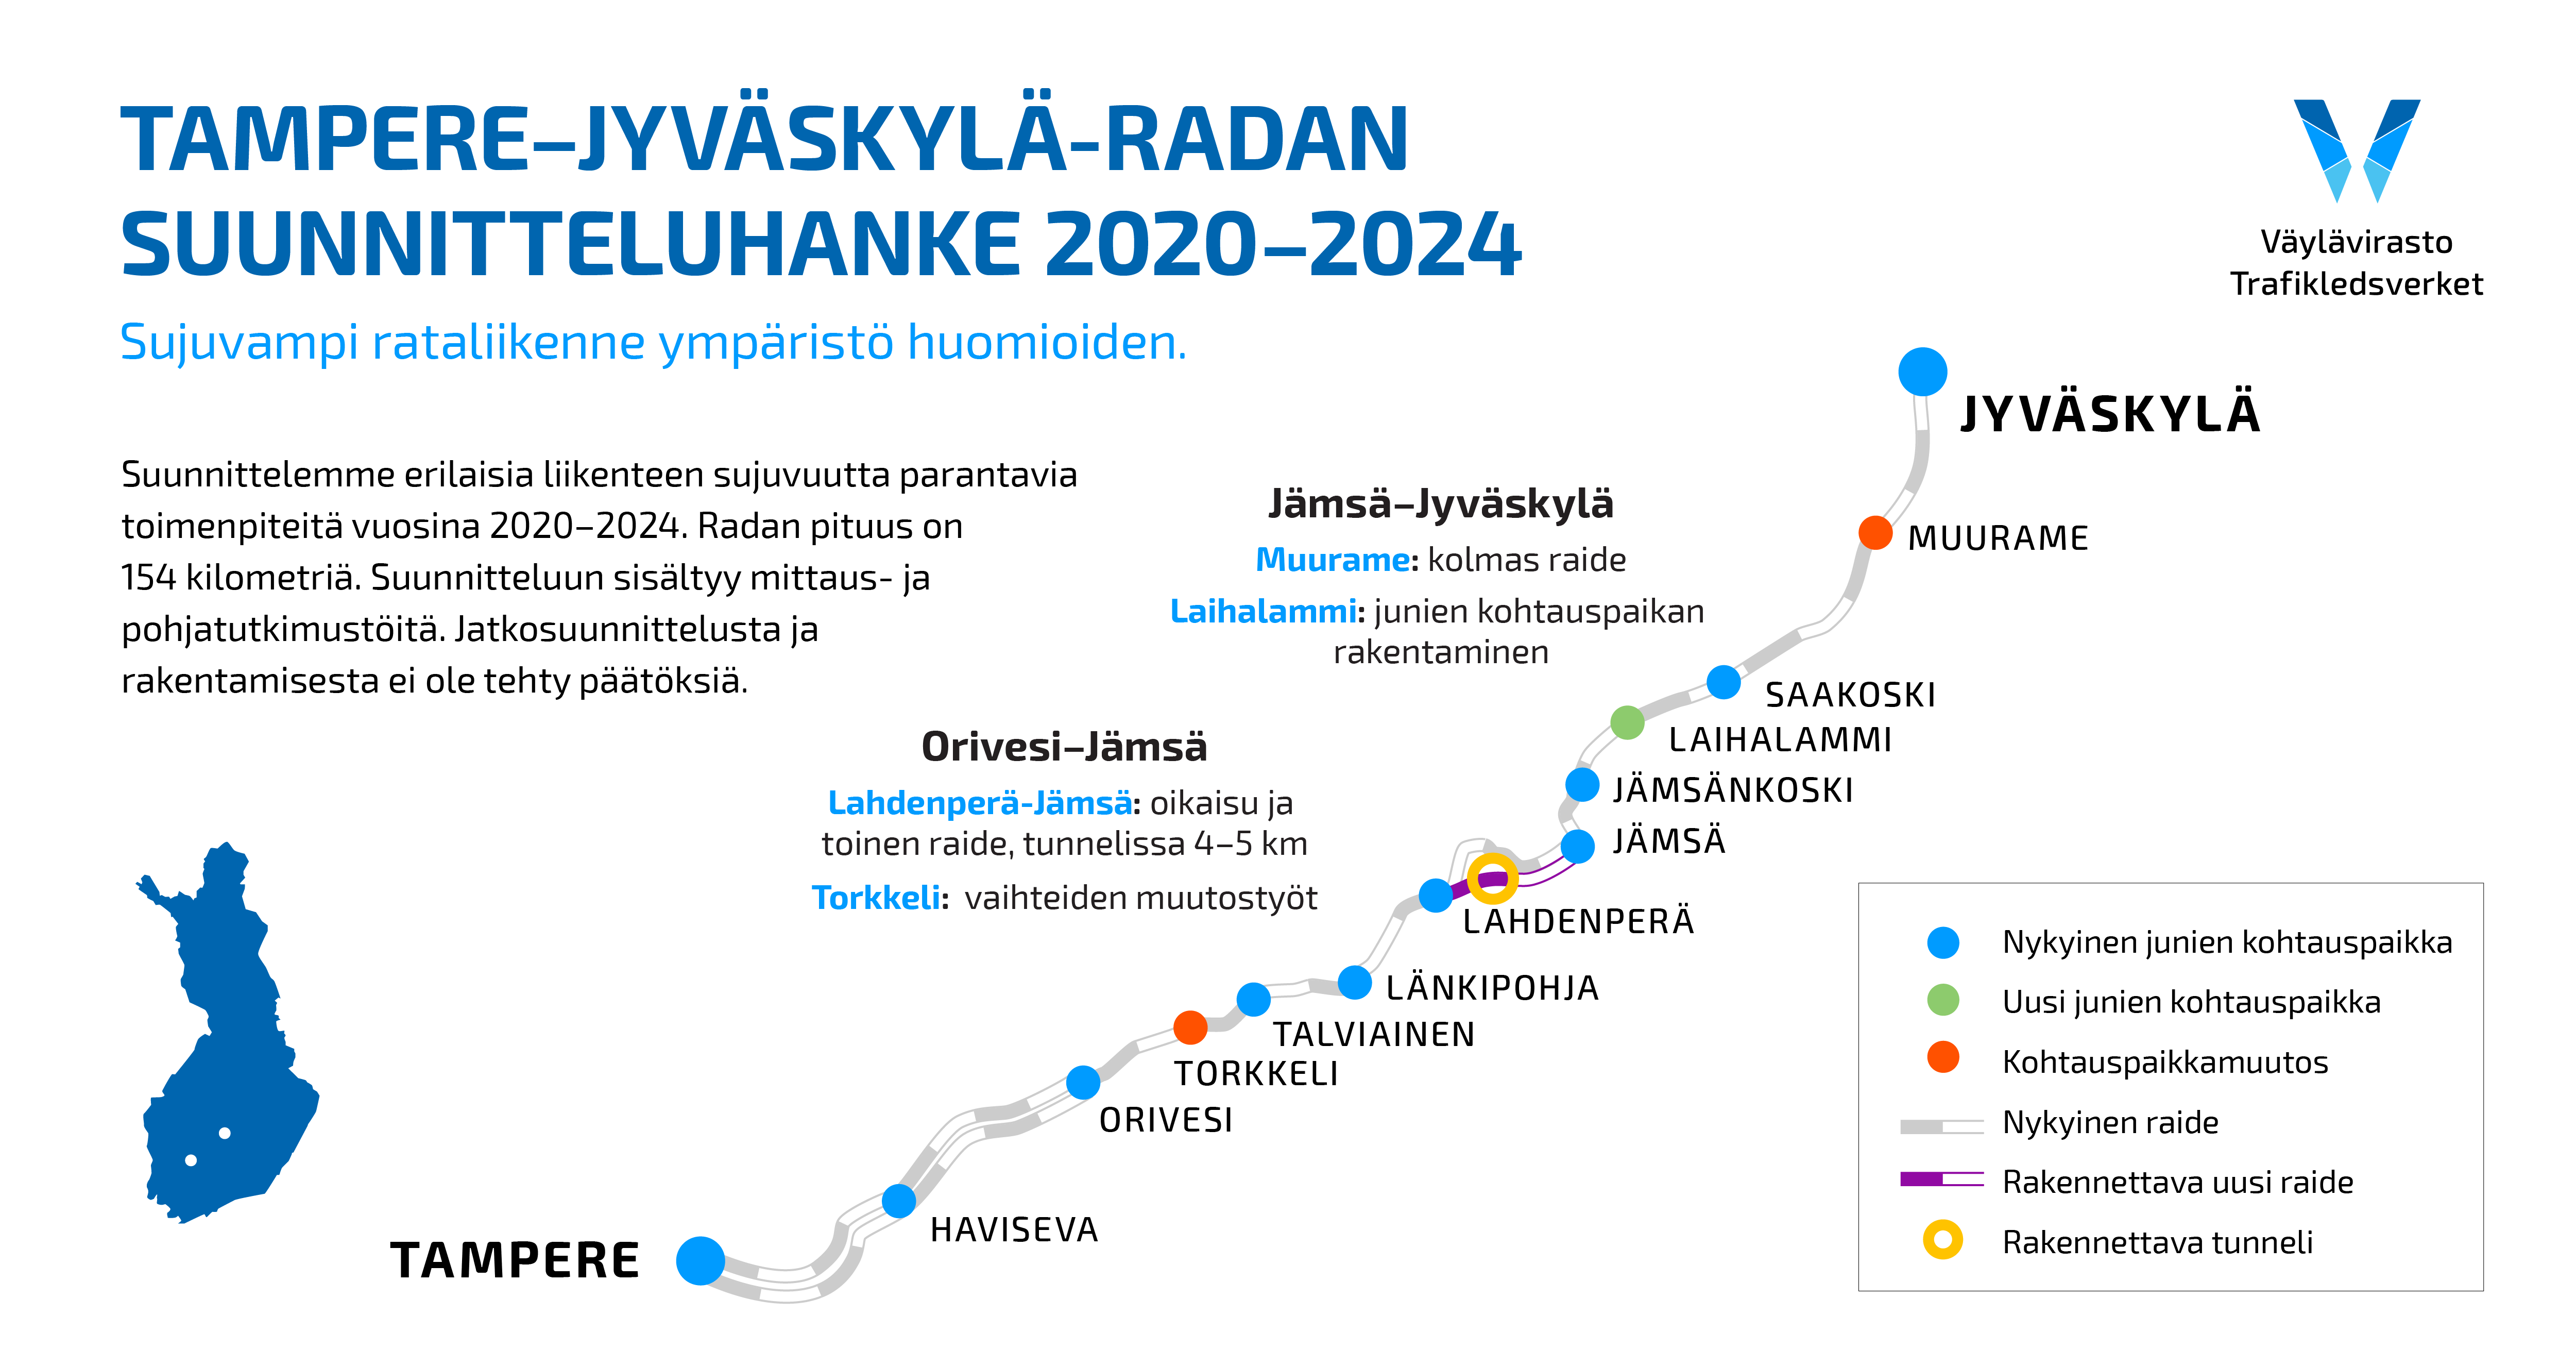 Infograafi, jossa lukee: Tampere-Jyväskylä -radan suunnitteluhanke 2020-2024, Sujuvampi rataliikenne ympäristö huomioiden, Suunnittelemme erilaisia liikenteen sujuvuutta parantavia toimenpiteitä vuosina 2020-2024. Suunnitteluun sisältyy mittaus- ja pohjatutkimustöitä. Jatkosuunnittelusta ja rakentamisesta ei ole tehty päätöstä. Orivesi-Jämsä -välillä. Lahdenperä-Jämsä: oikaisu ja toinen raide, tunnelissa 5-6 km. Torkkeli: vaihteiden muutostyöt. Jämsä-Jyväskylä -välillä. Muurame: kolmas raide. Laihalammi: junien kohtauspaikan rakentaminen.